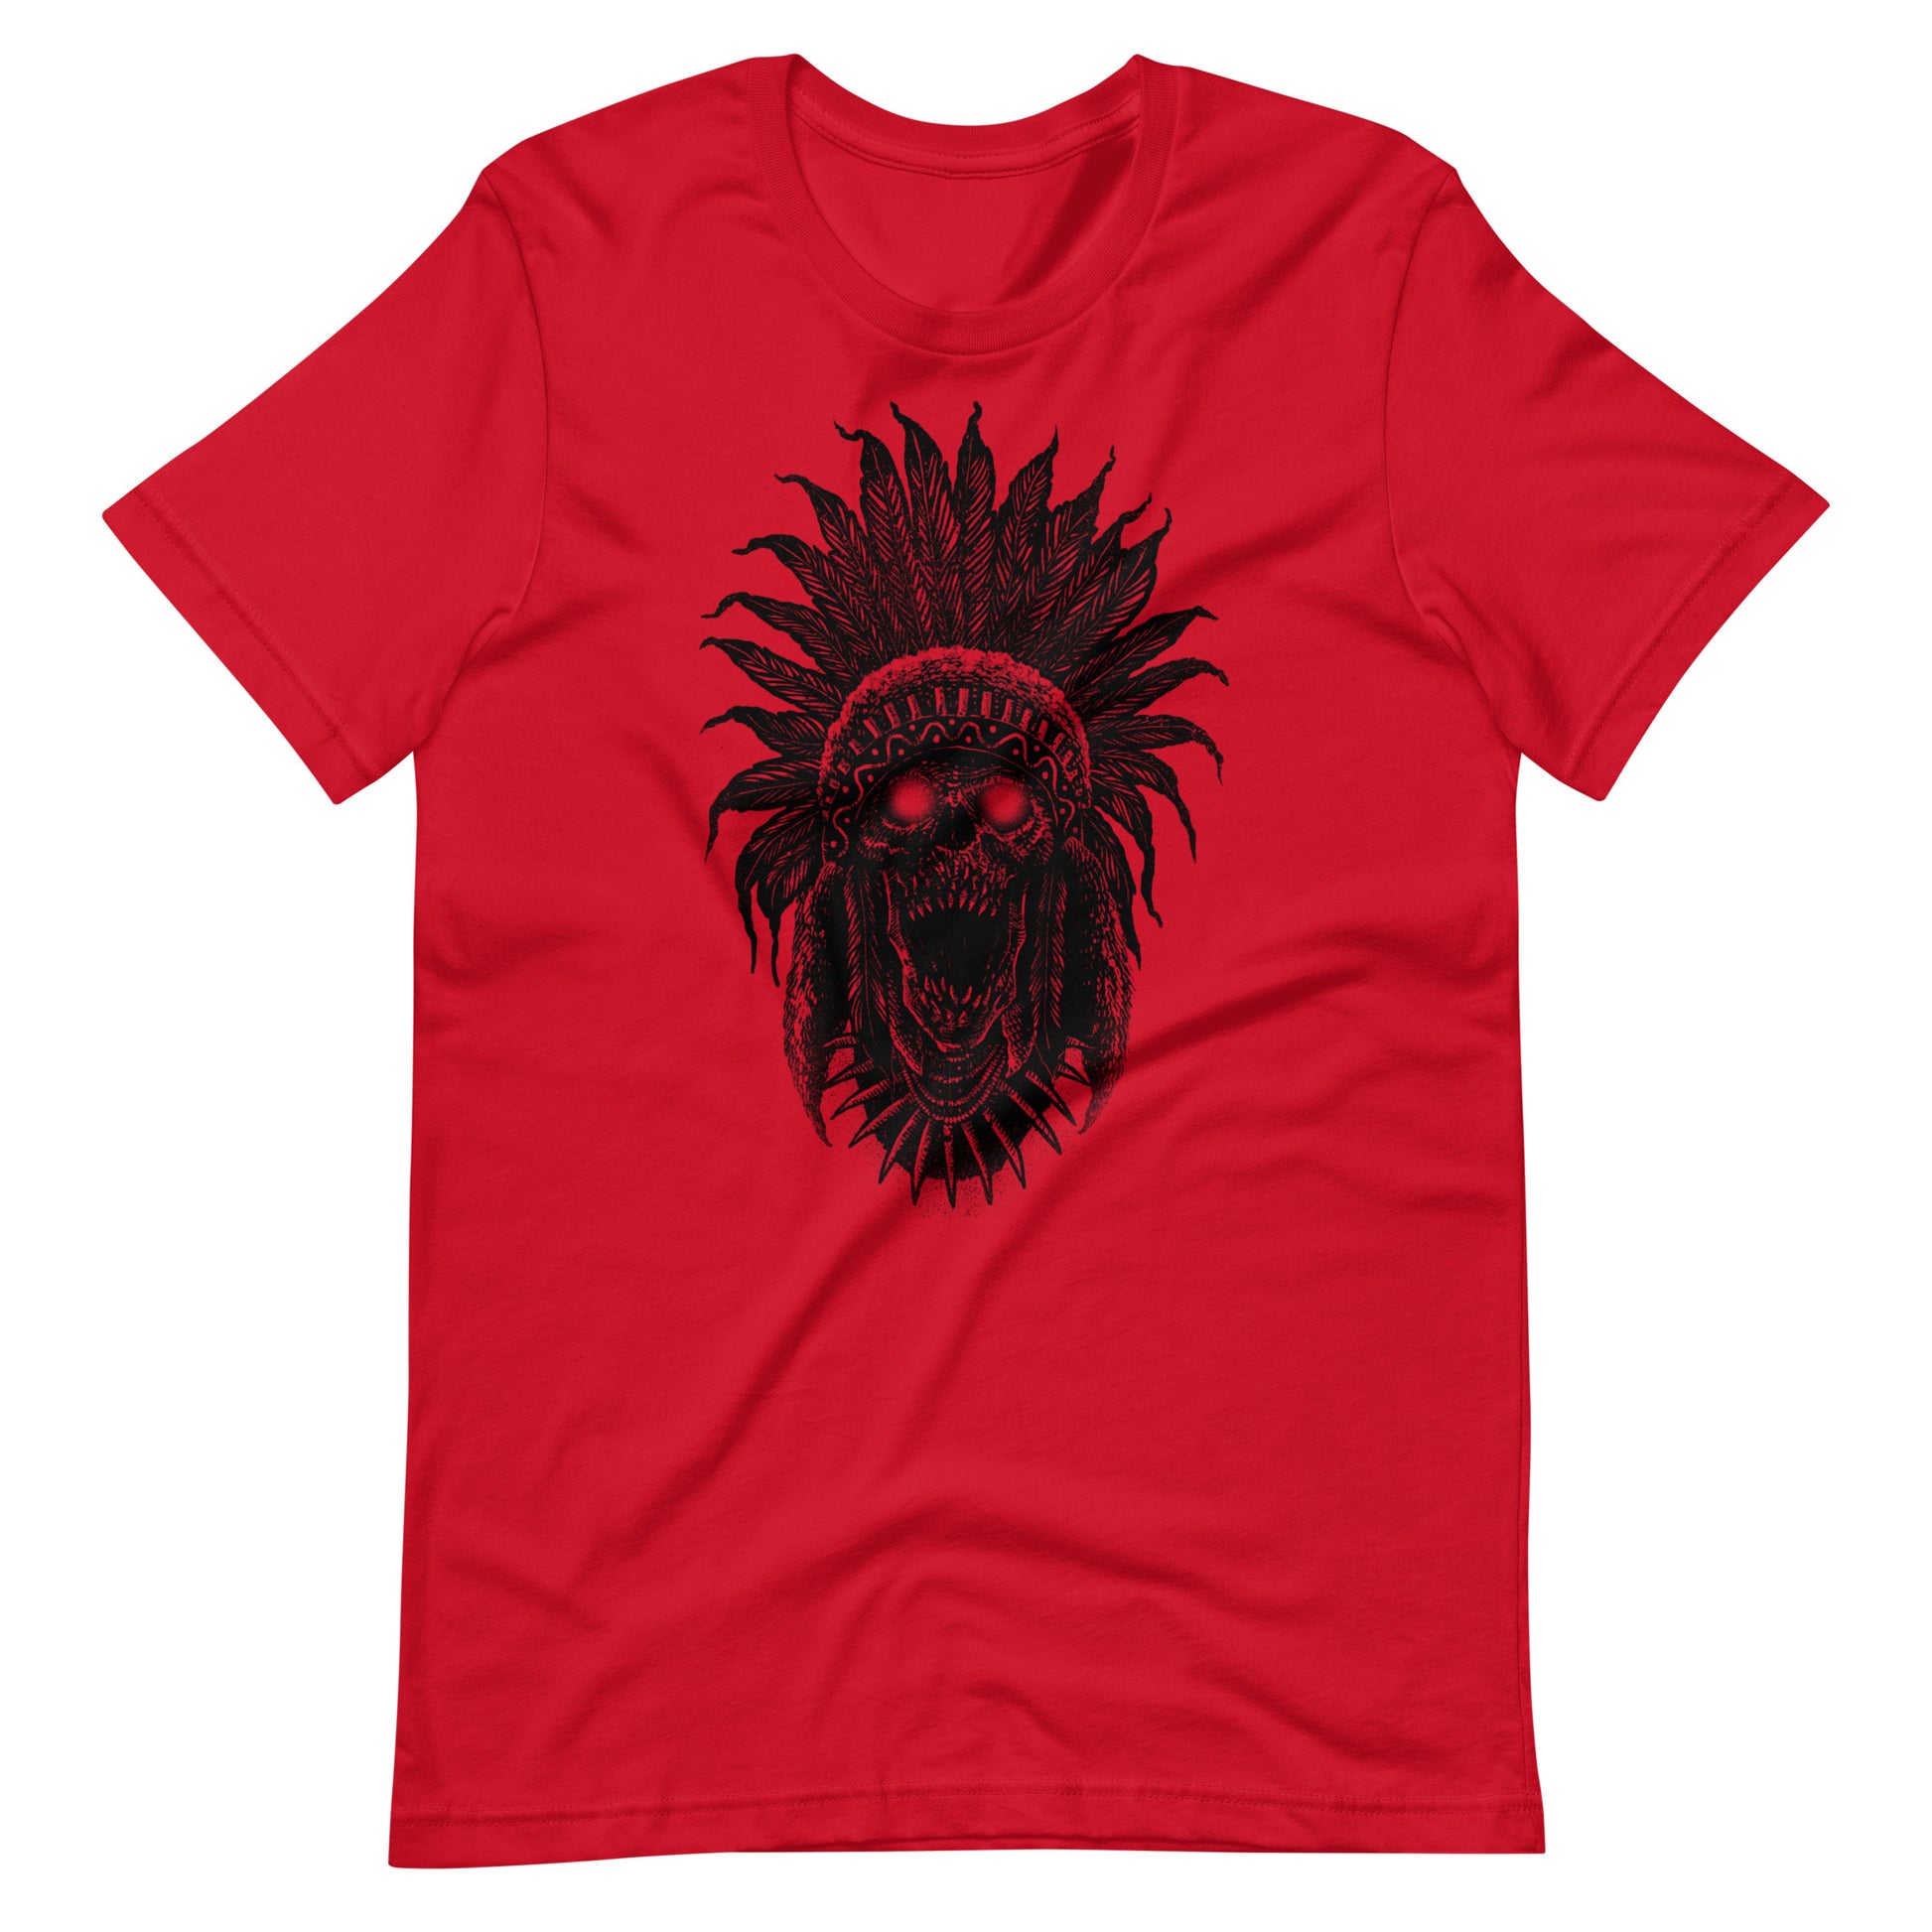 Tribe Skull Black - Men's t-shirt - Red Front